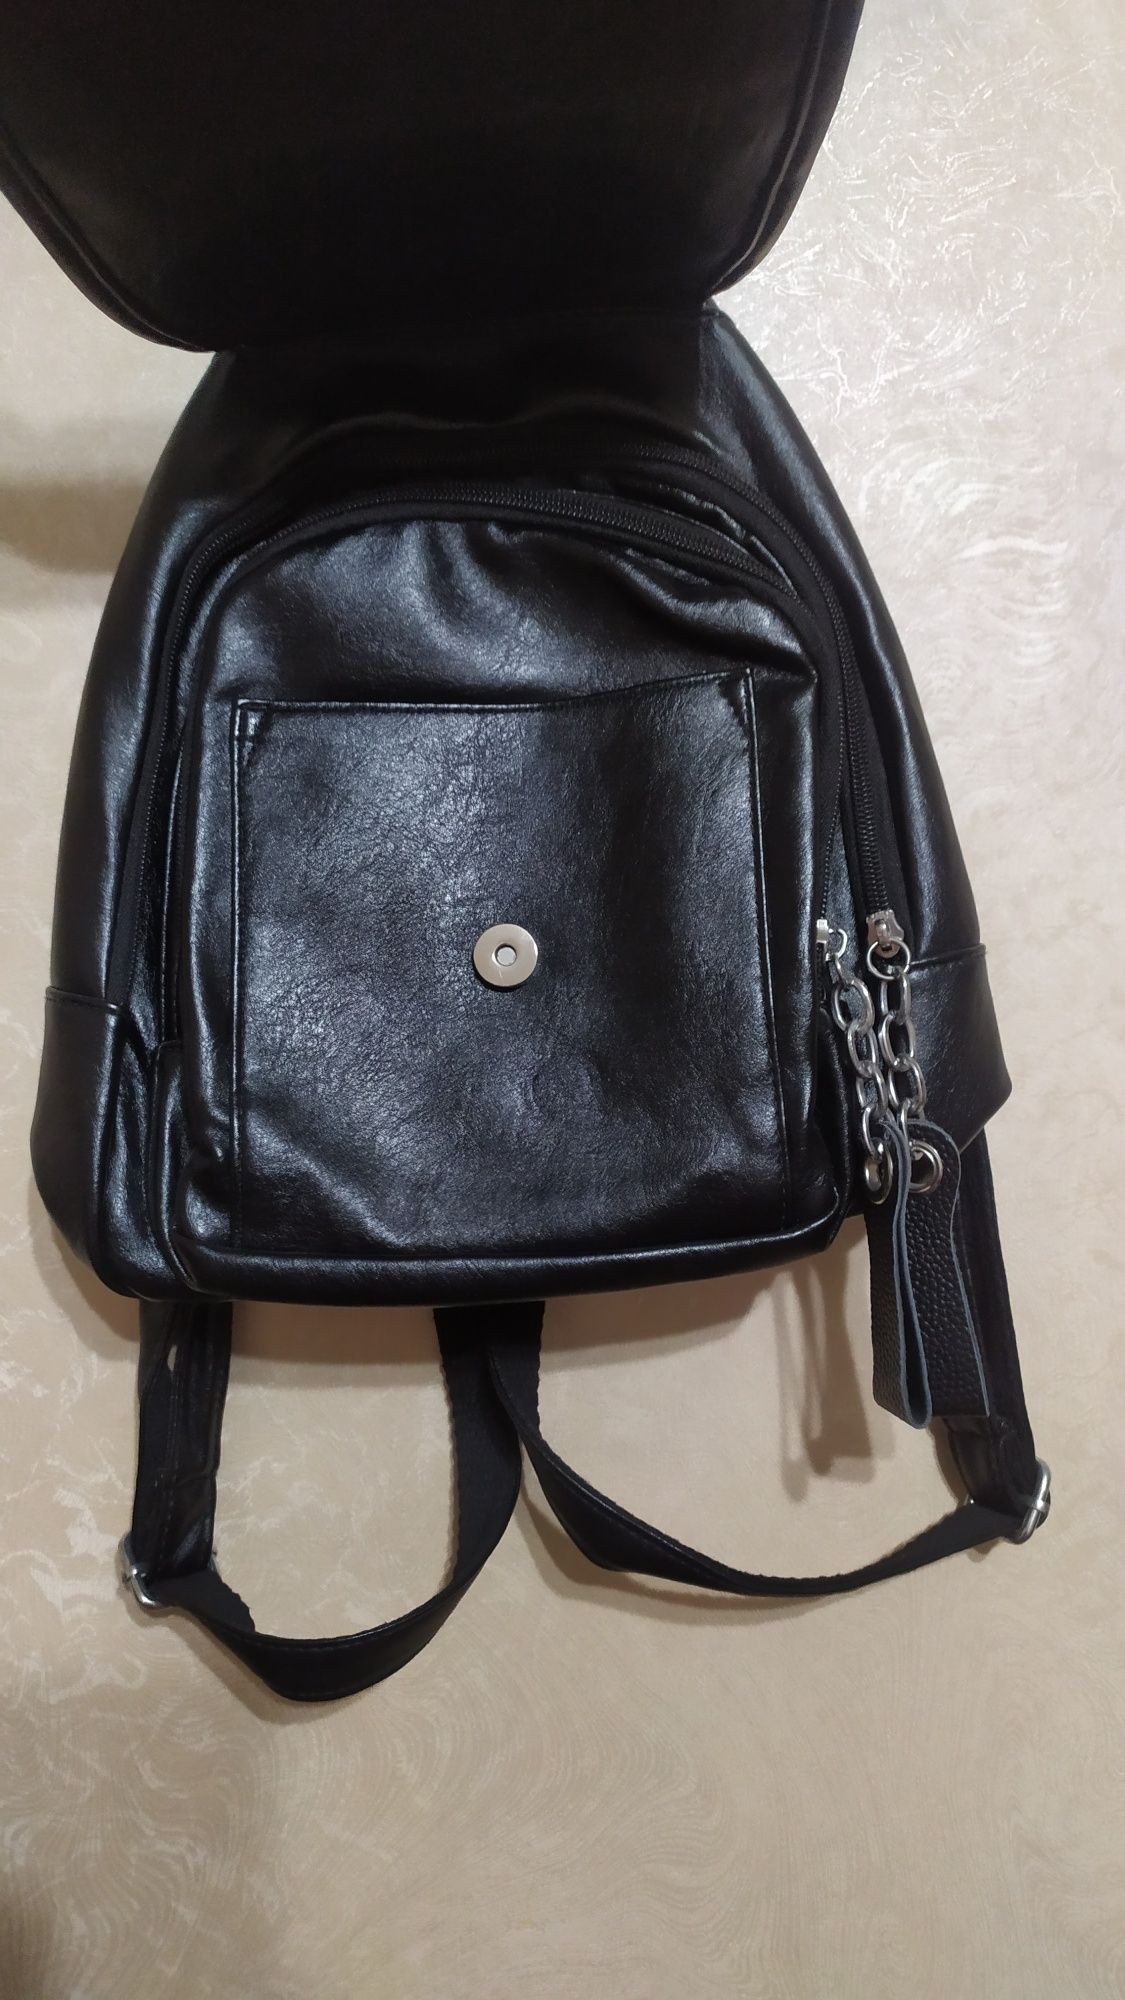 Рюкзак черного цвета